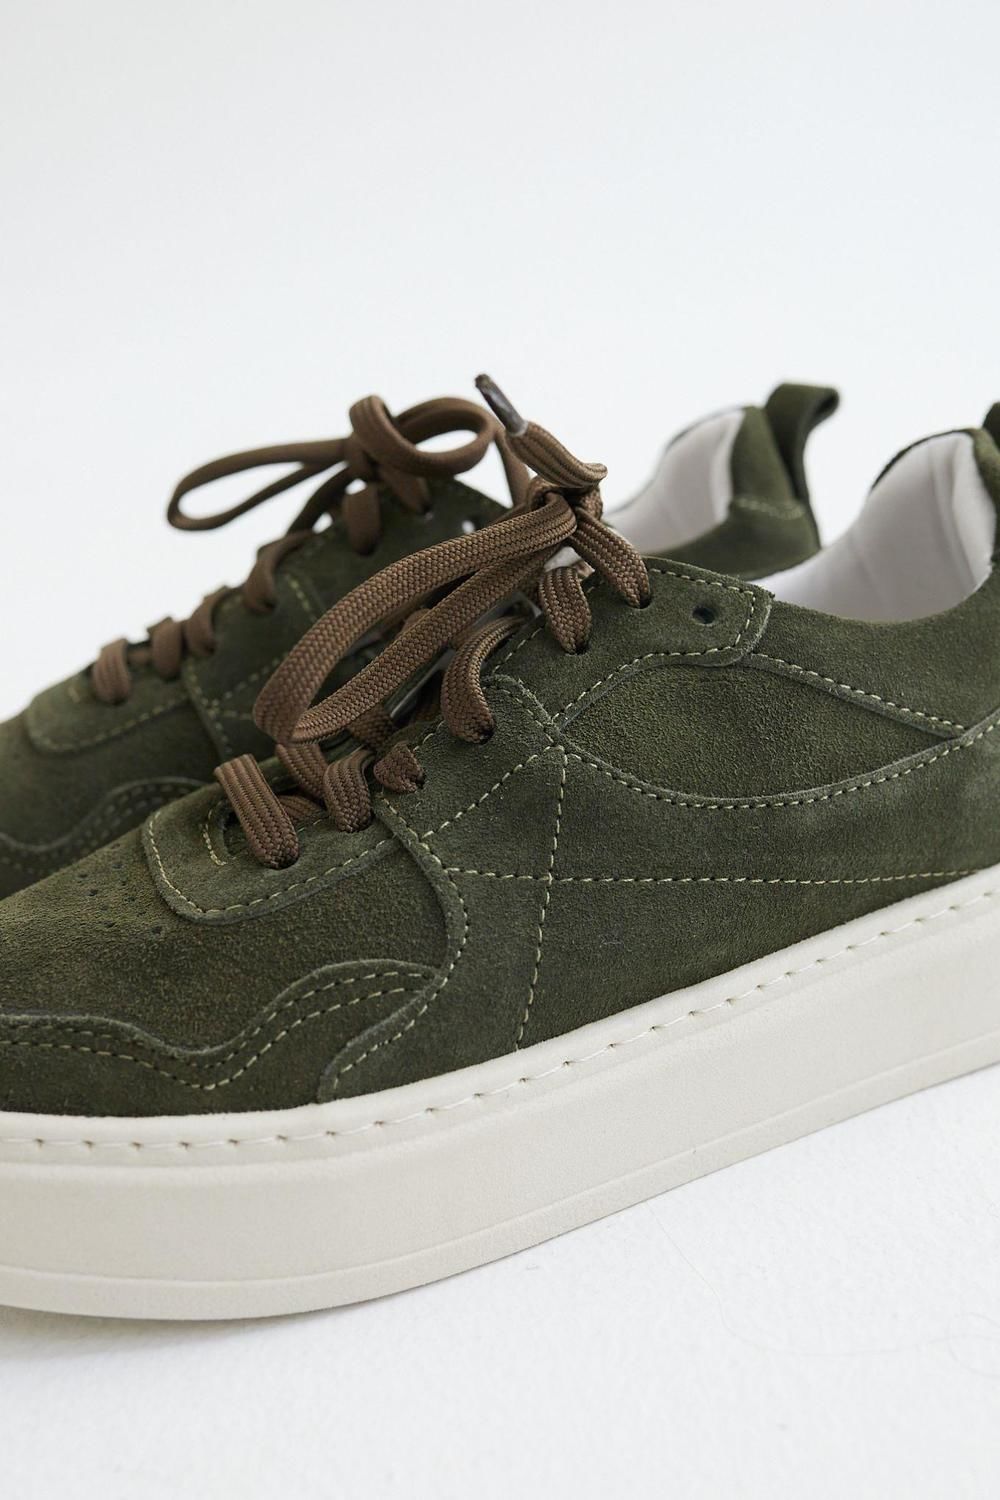 Sneakers Pul verde oliva 35